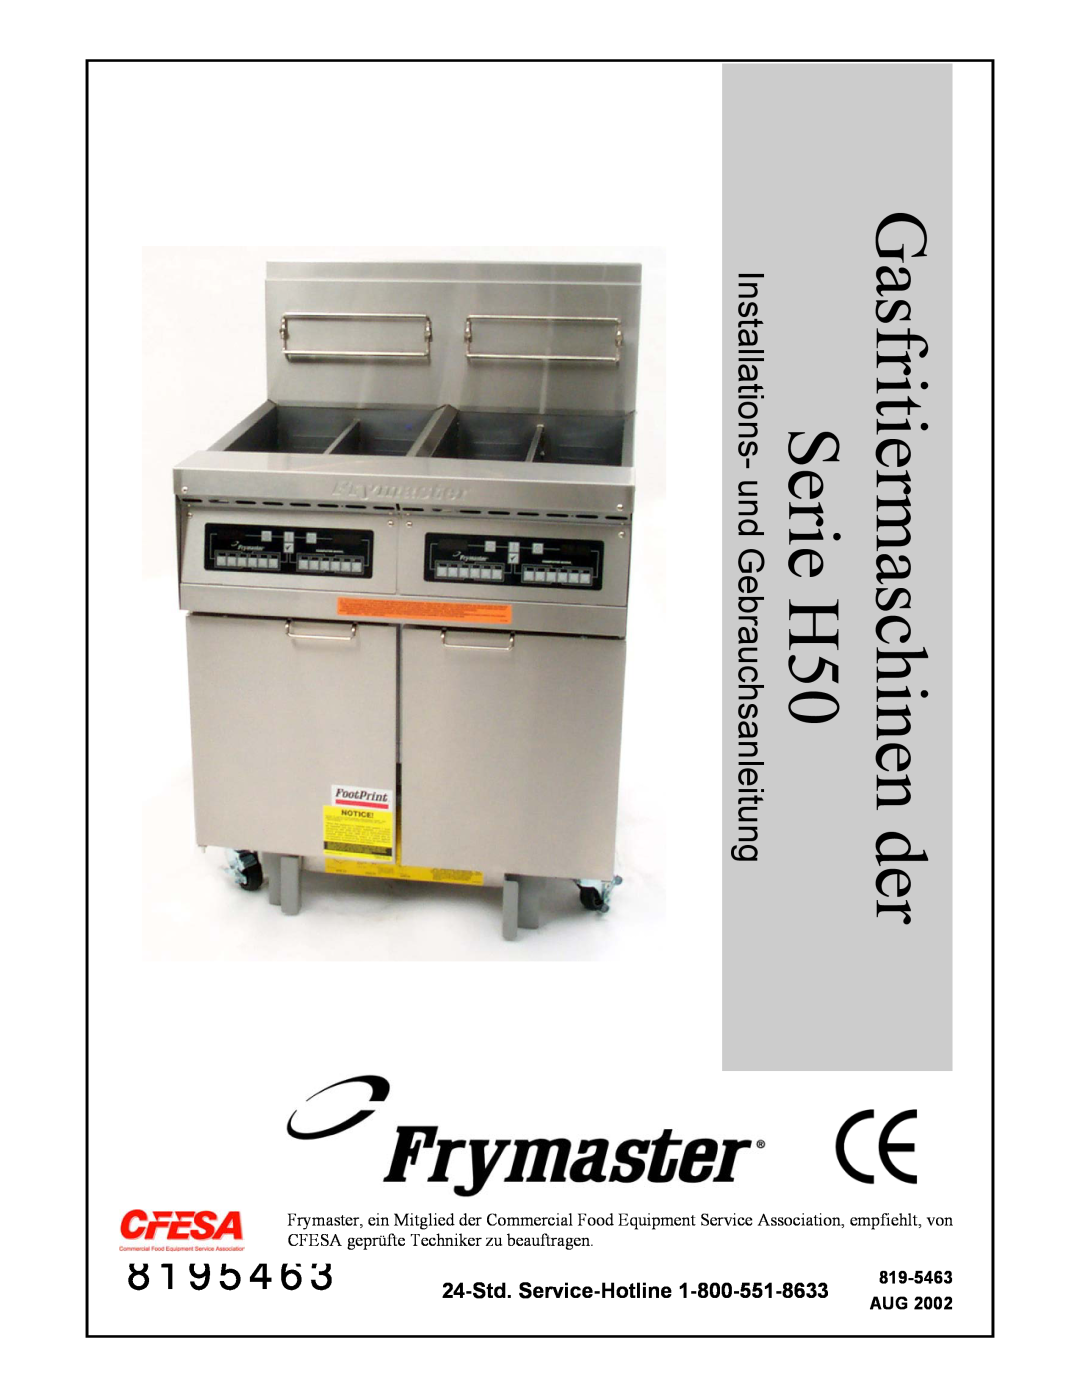 Frymaster Series H50 manual 8195463, Installations- und Gebrauchsanleitung, 819-5463 